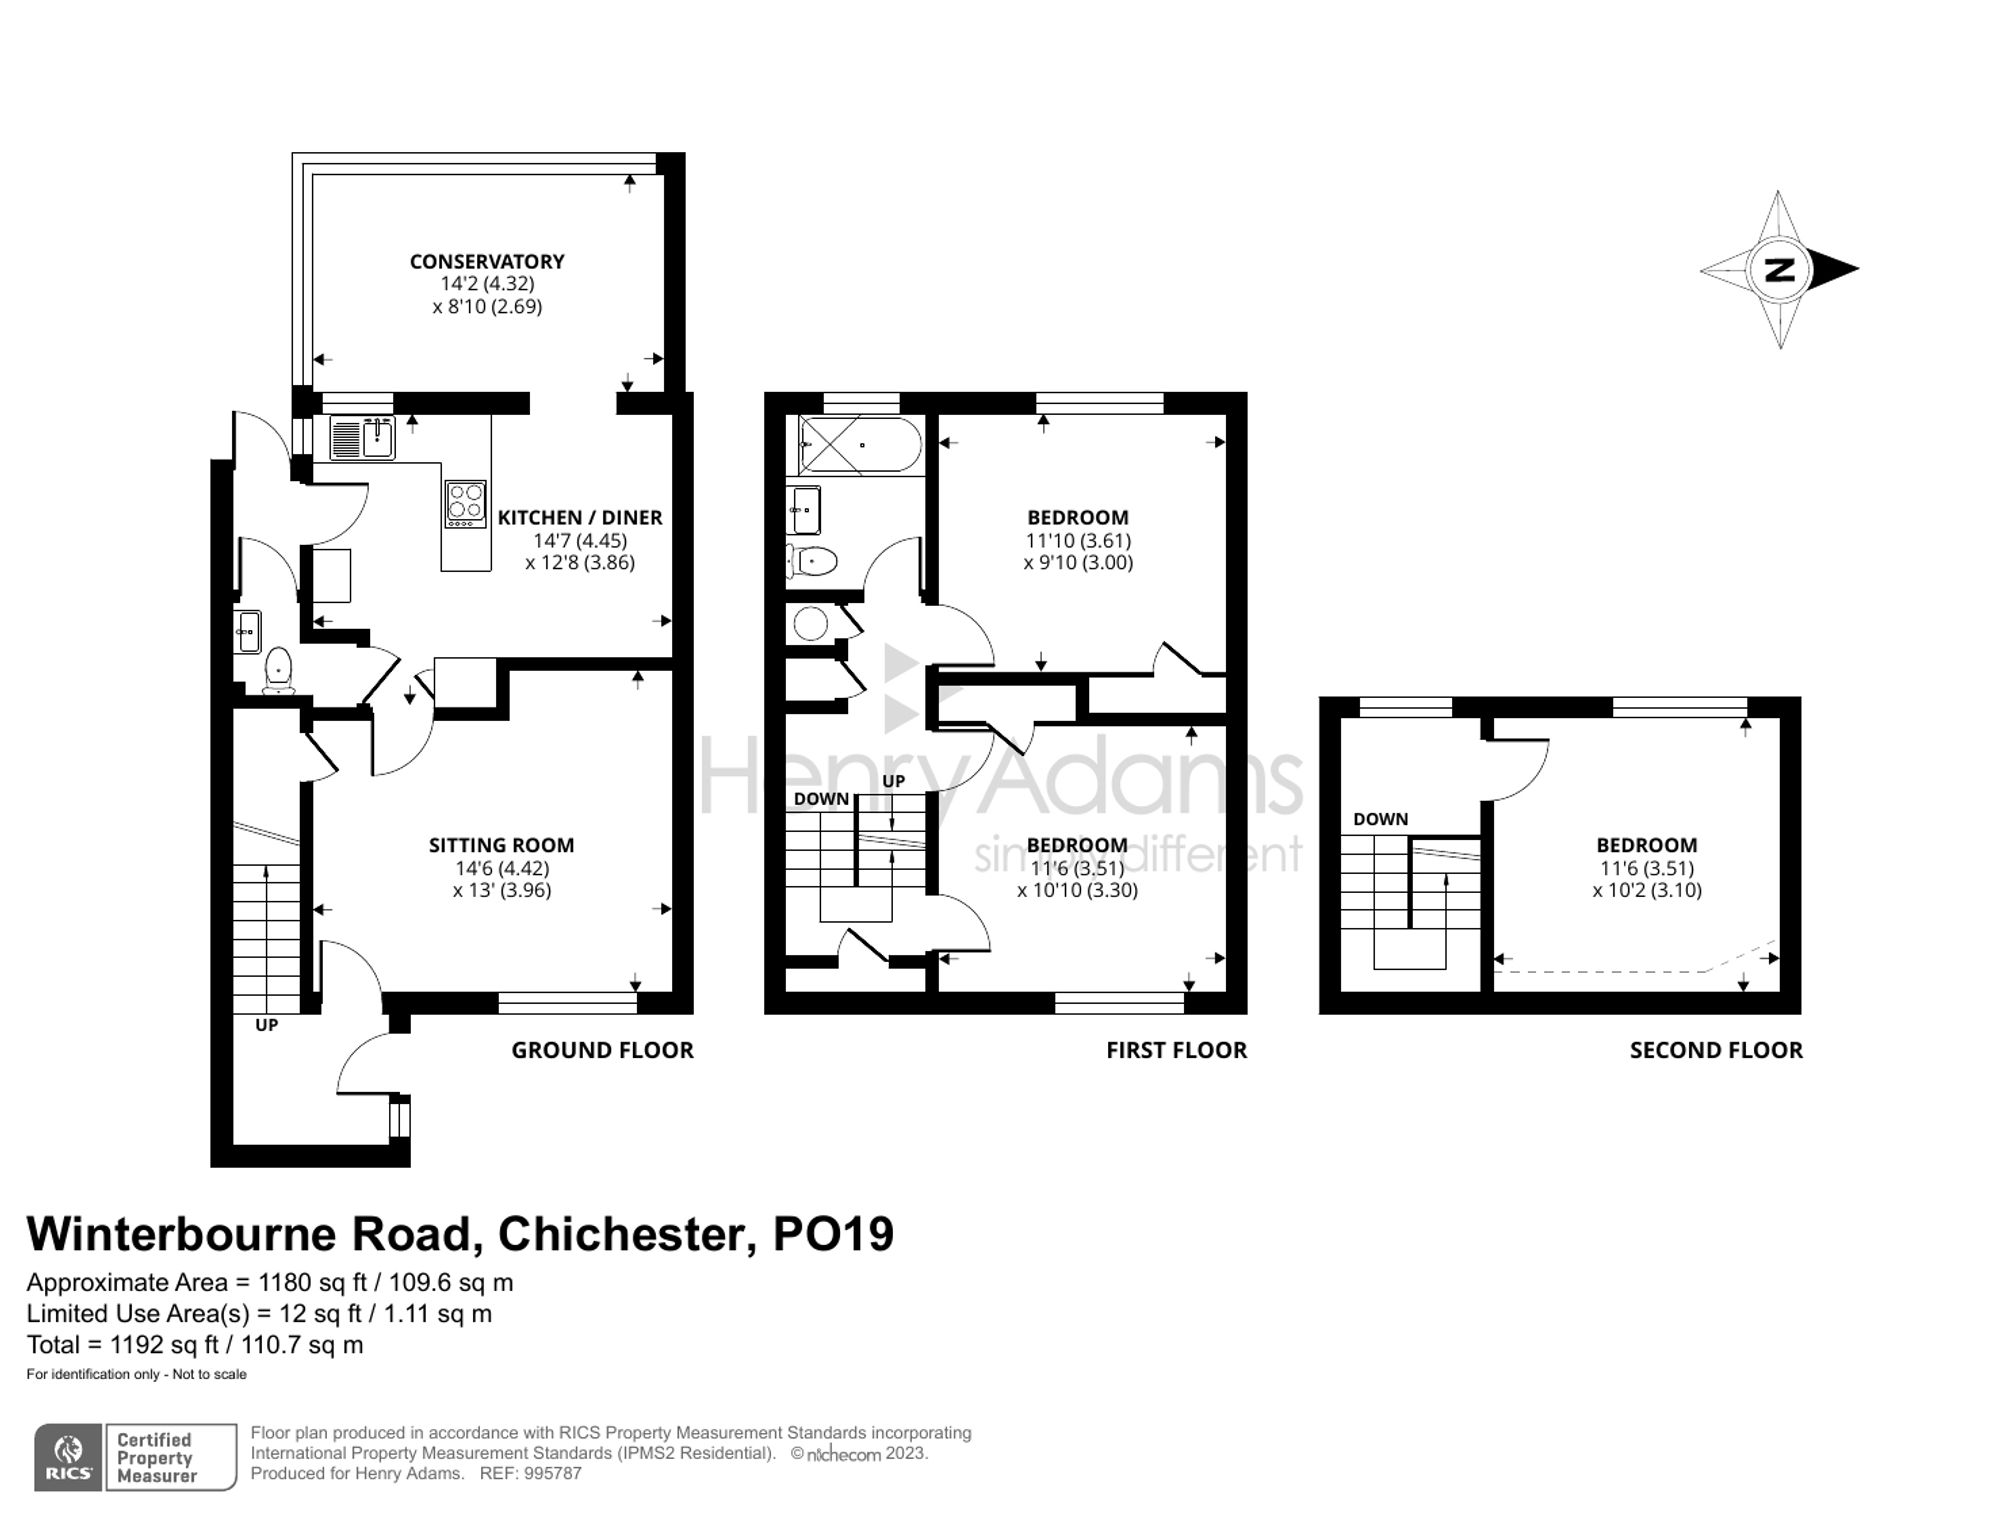 Winterbourne Road, Chichester, PO19 floorplans